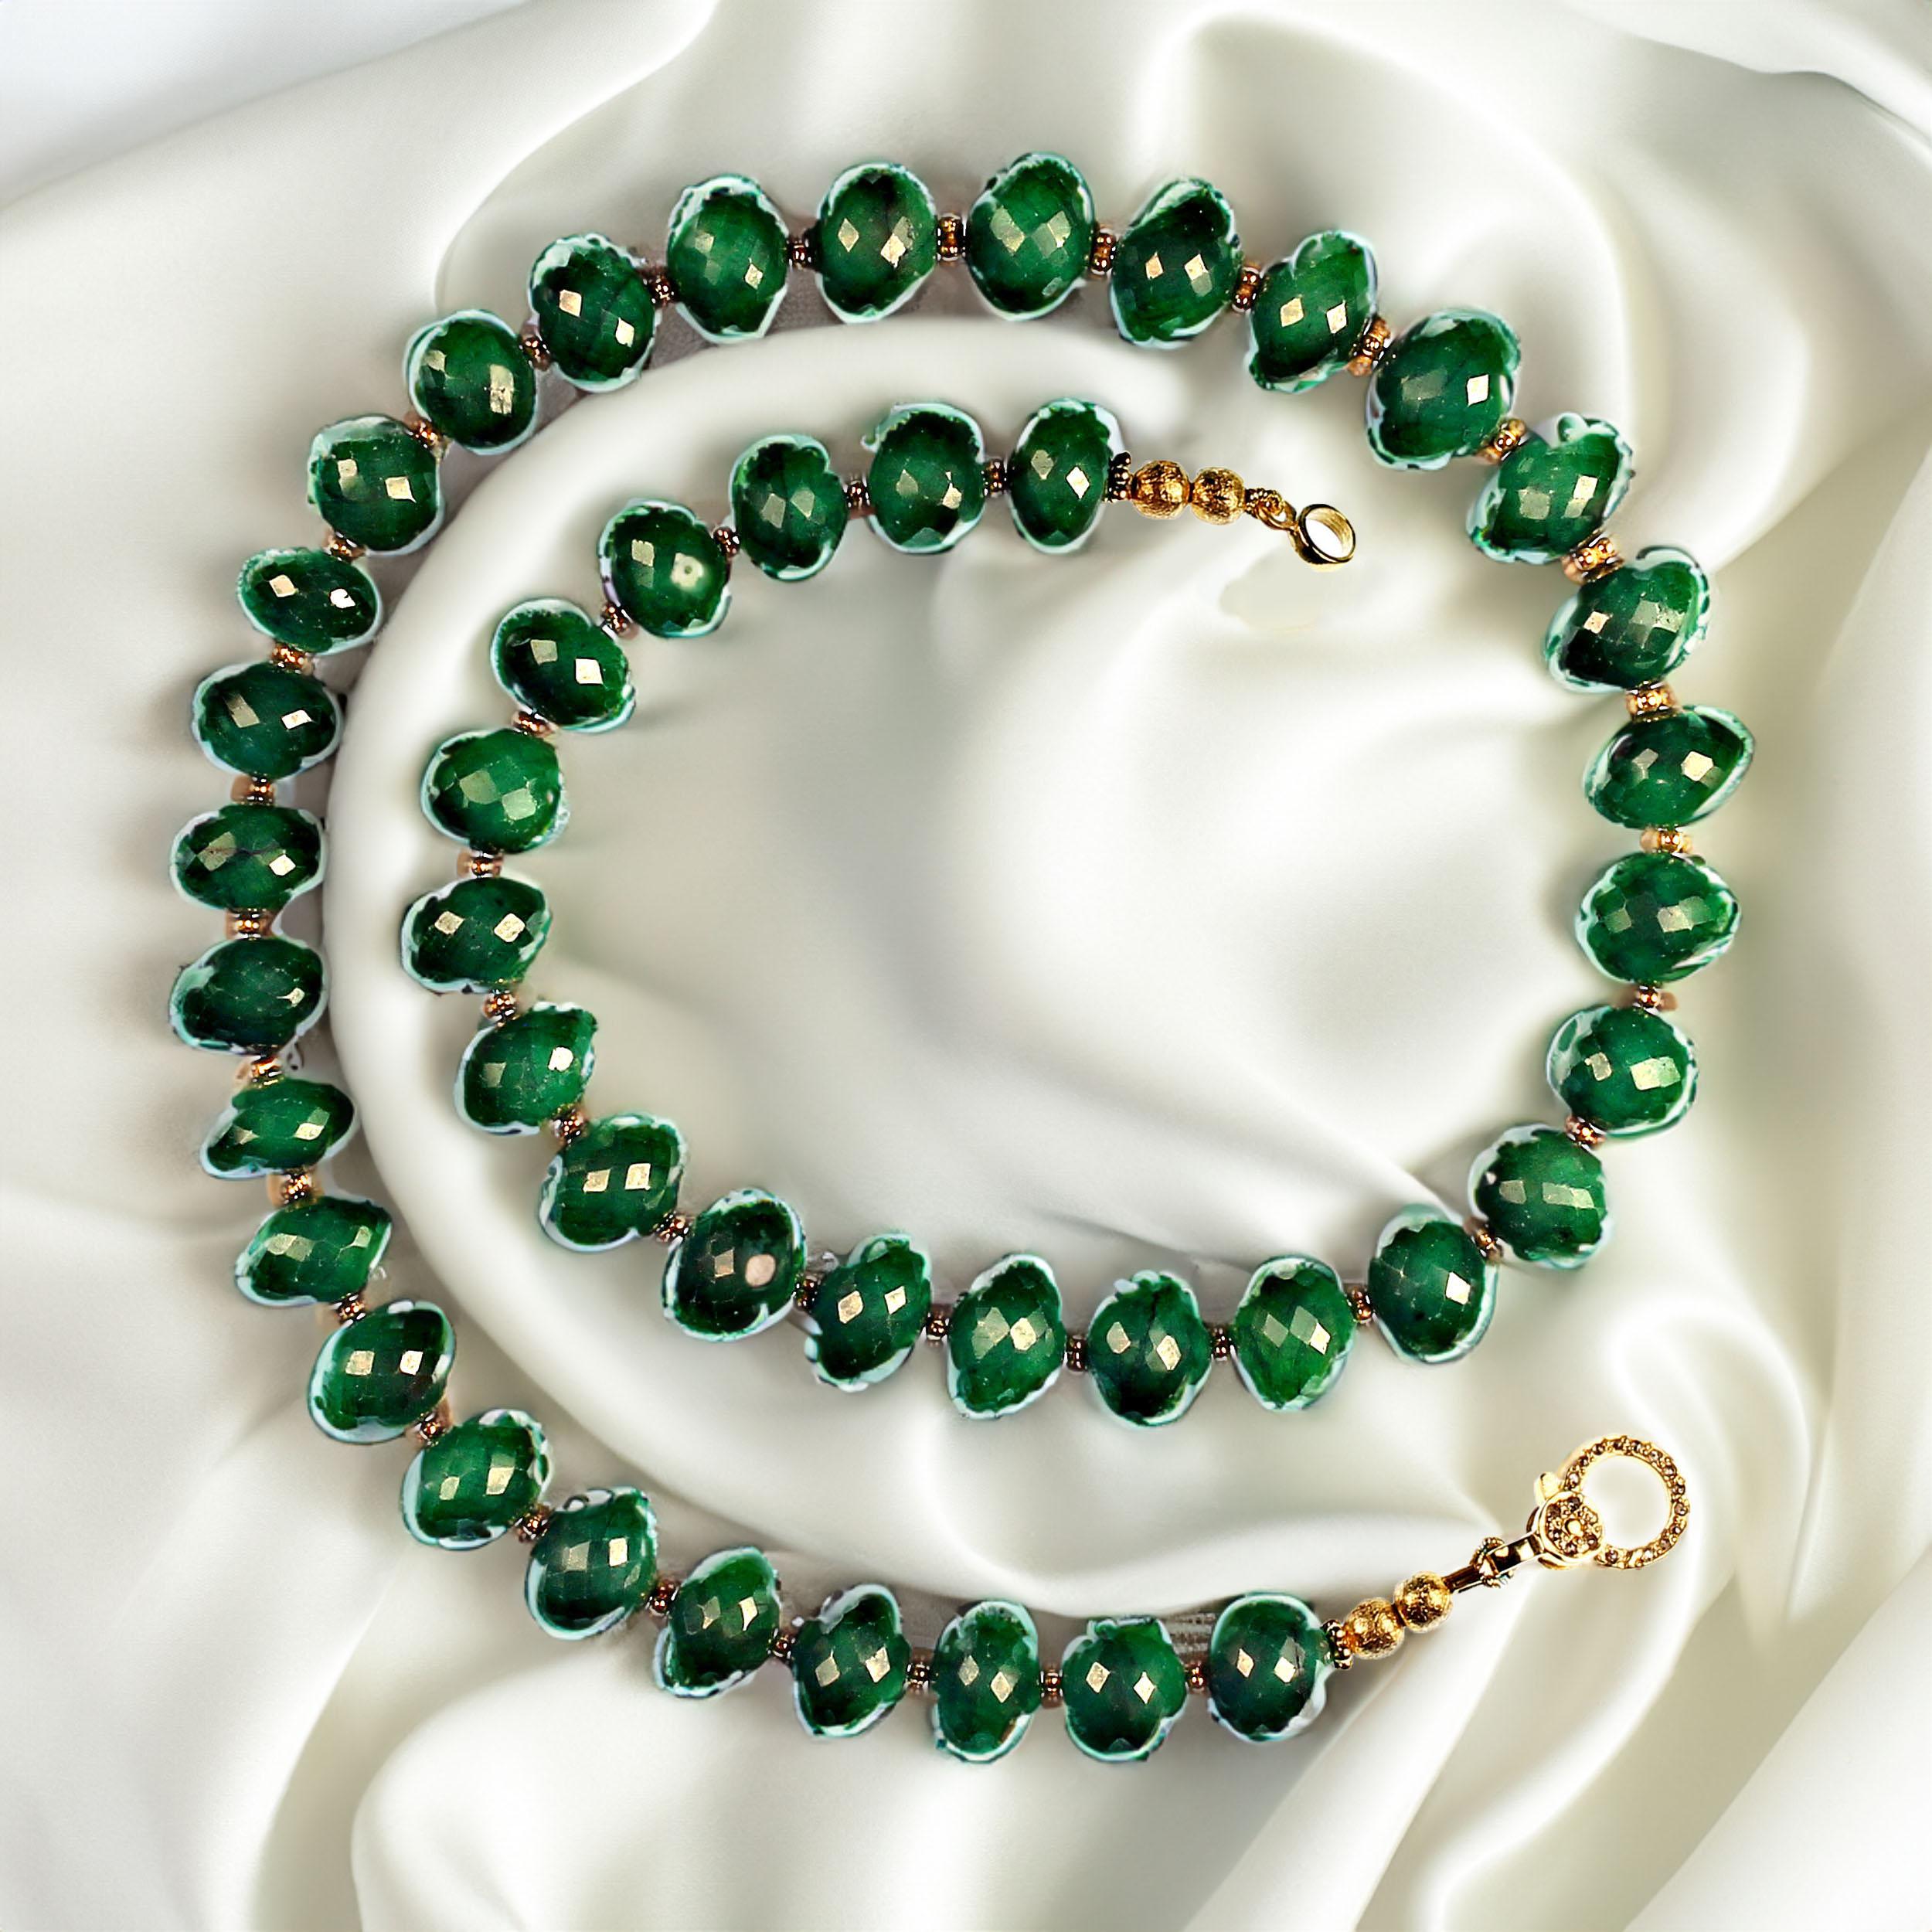 18 Zoll leicht ovale, nicht ganz runde facettierte Smaragd-Halskette. Kleine goldfarbene Gänseblümchen akzentuieren das Glitzern der Smaragdfacetten. Alle Smaragd-Liebhaberinnen haben mit dieser Schönheit Glück, denn sie wird von nun an Ihr